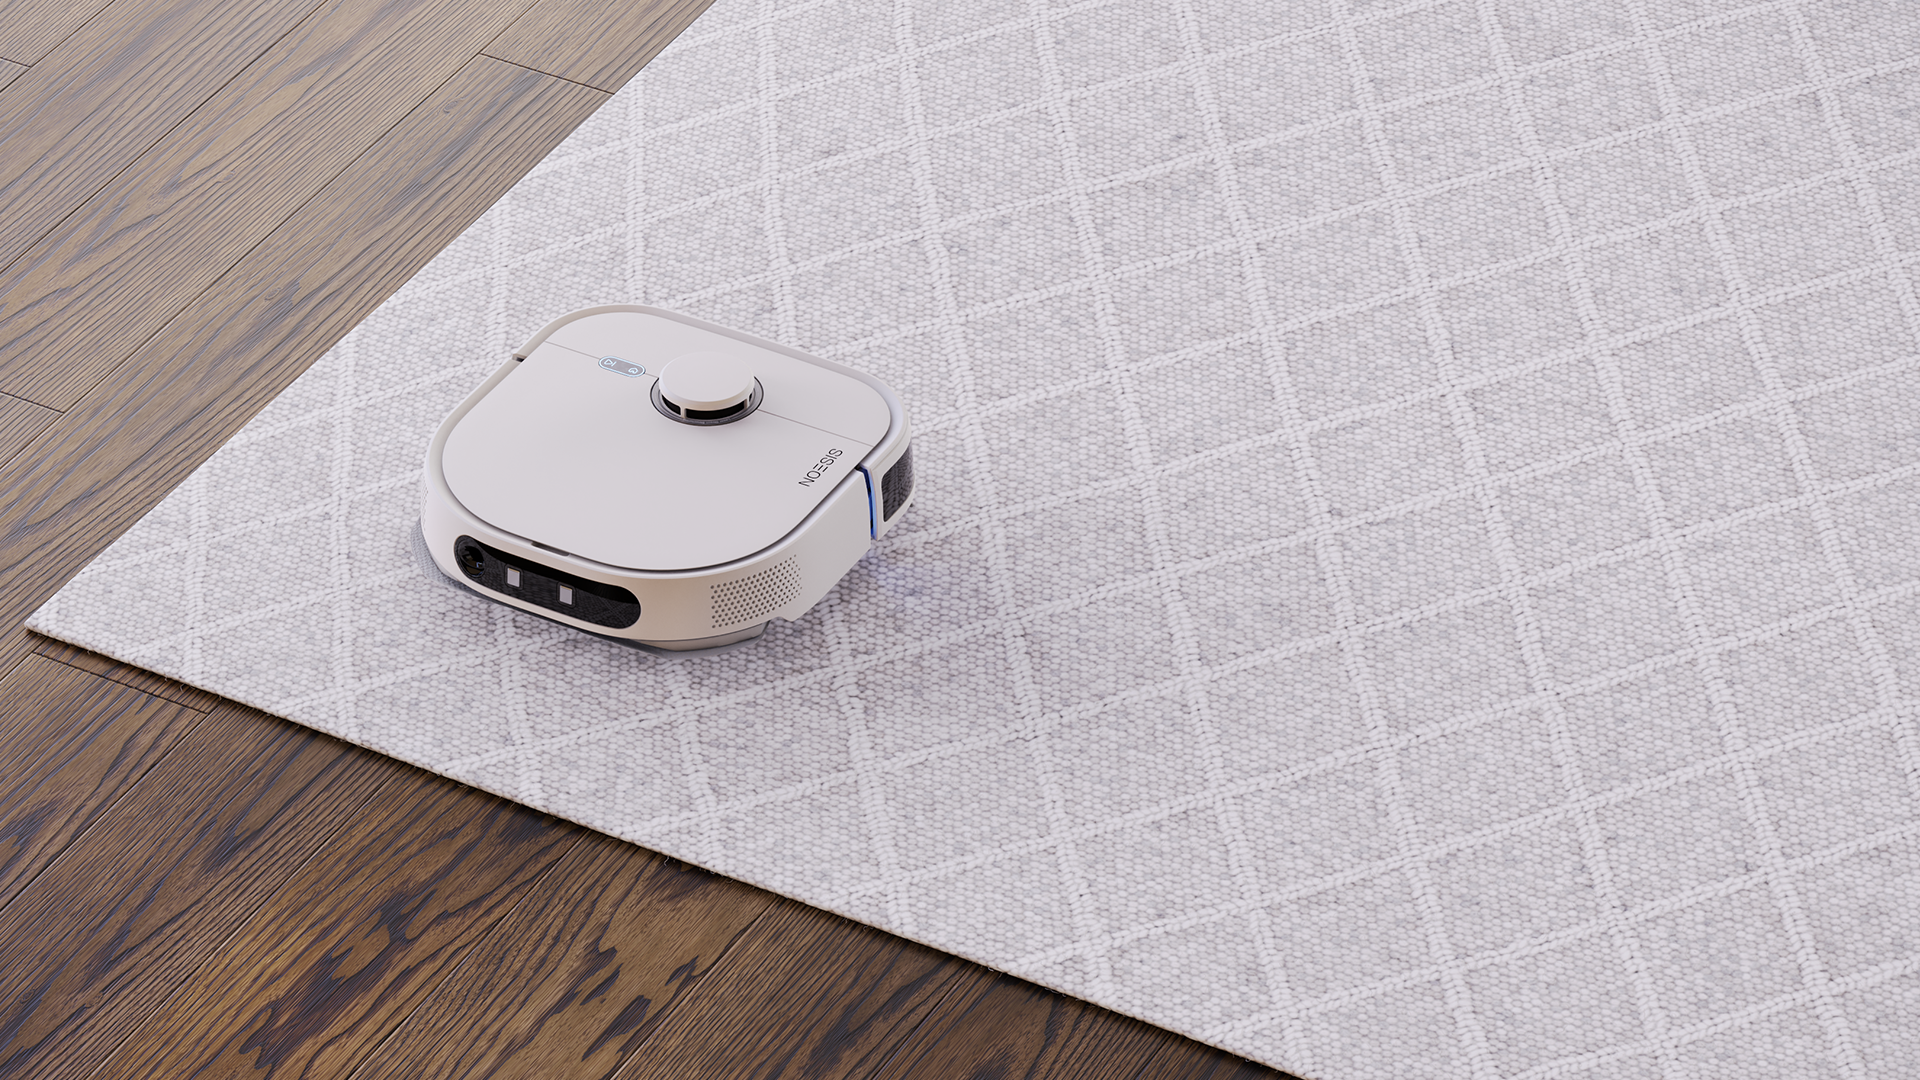 Noesis Roboter auf einem sauberen grauen Teppich neben einem Holzboden